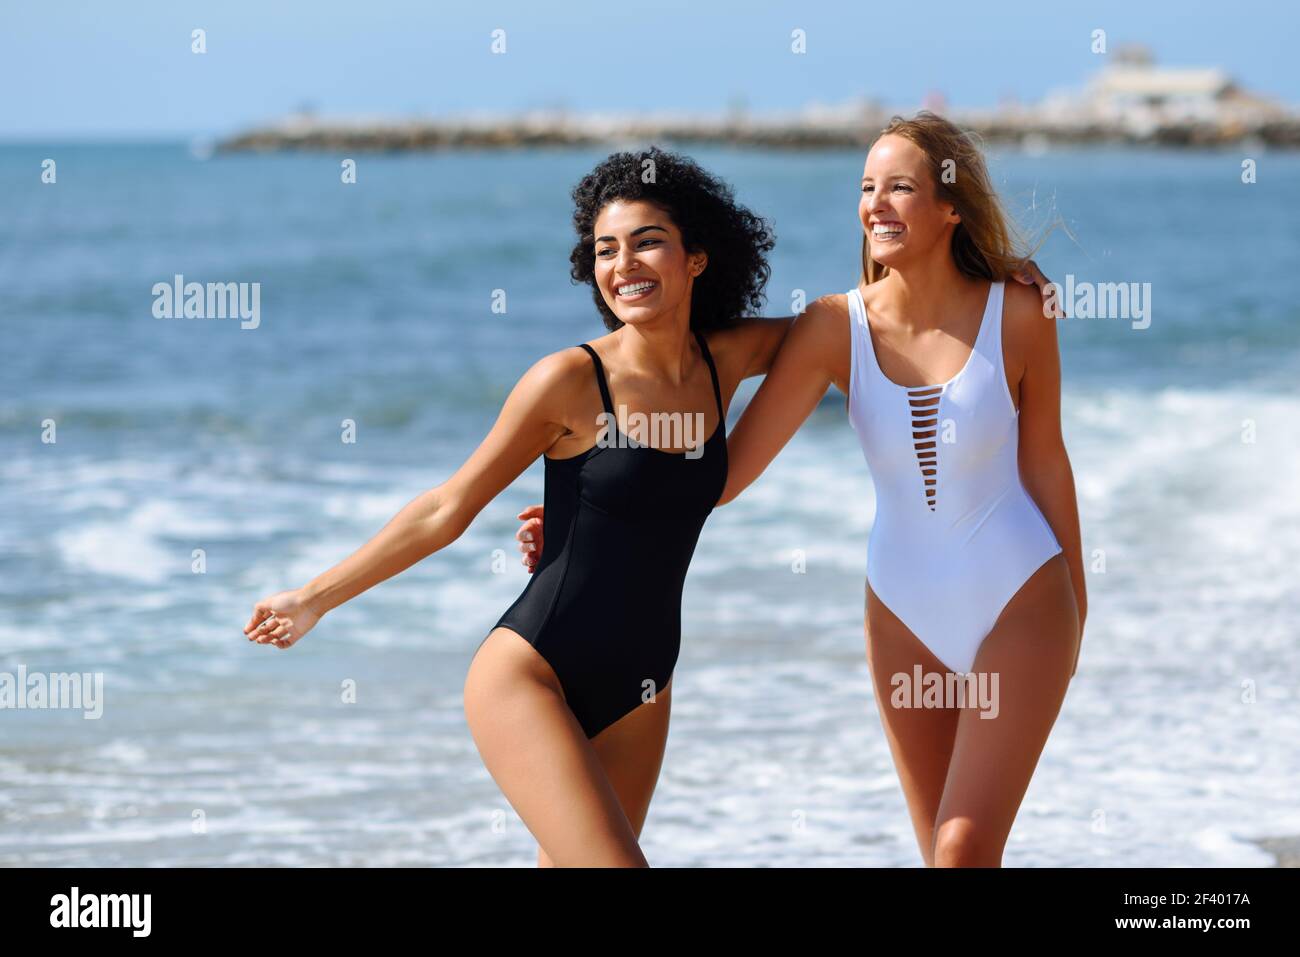 Dos mujeres jóvenes con cuerpos hermosos en traje de baño en un tropical.  Dos mujeres jóvenes con hermosos cuerpos en traje de baño en una playa  tropical. Mujeres caucásicas y árabes graciosas